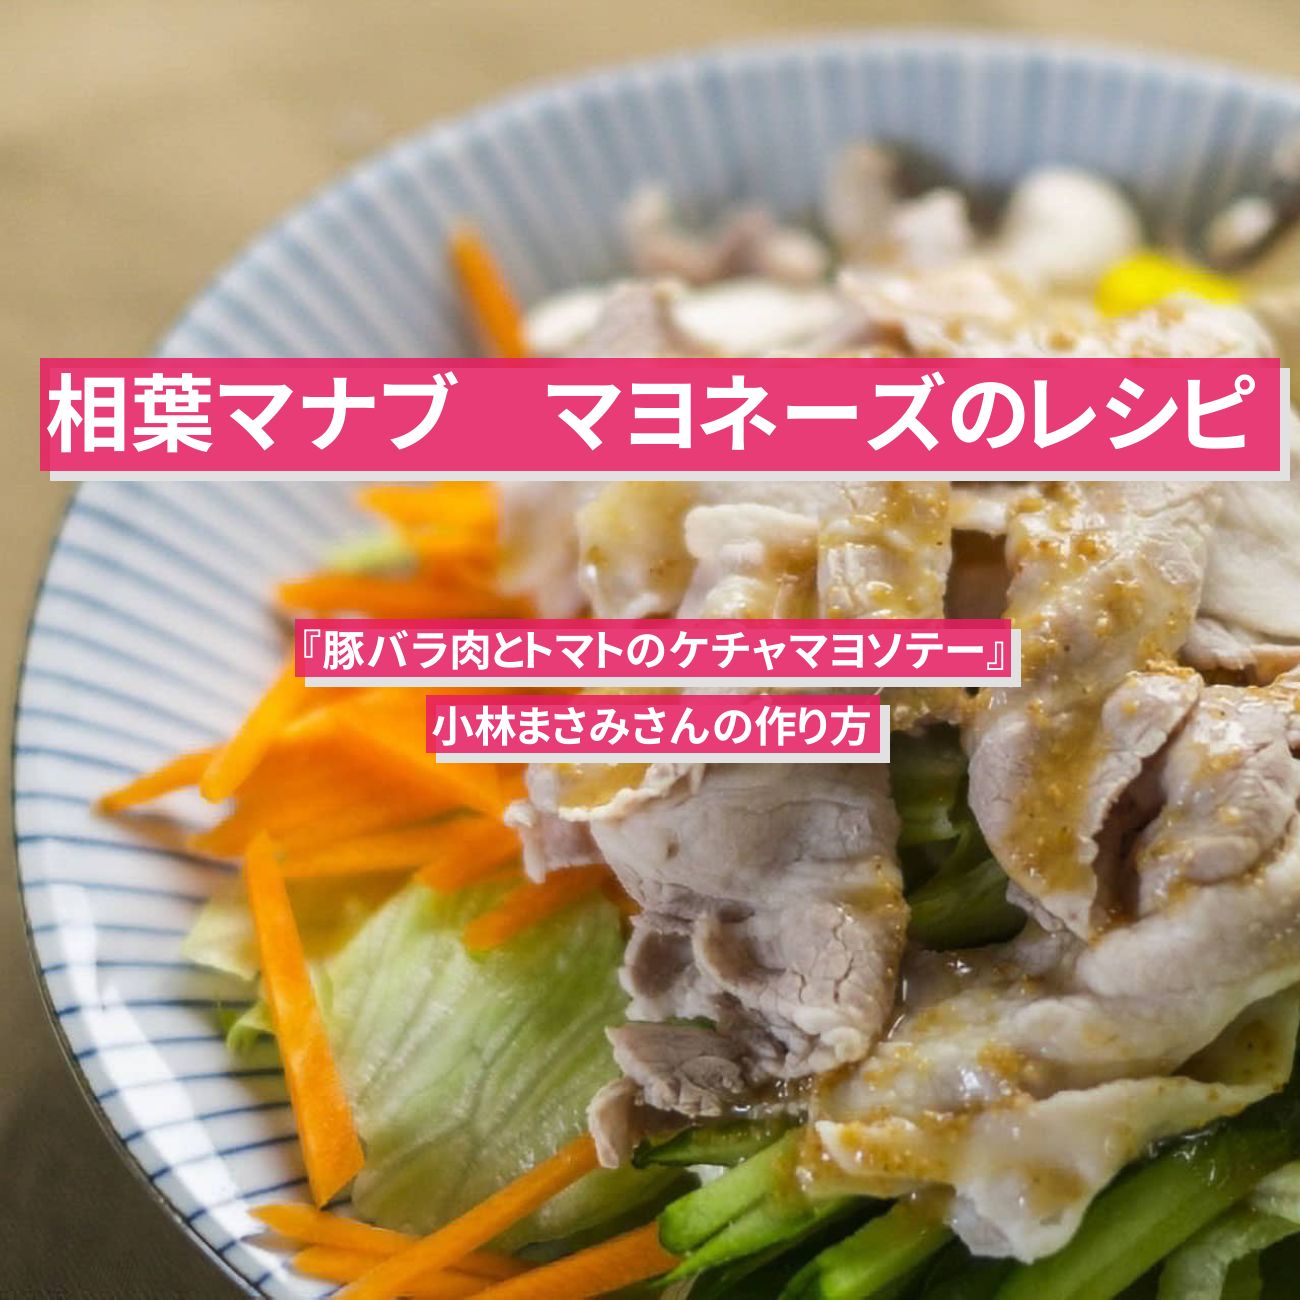 【相葉マナブ】マヨネーズのレシピ『豚バラ肉とトマトのケチャマヨソテー』小林まさみさんの作り方